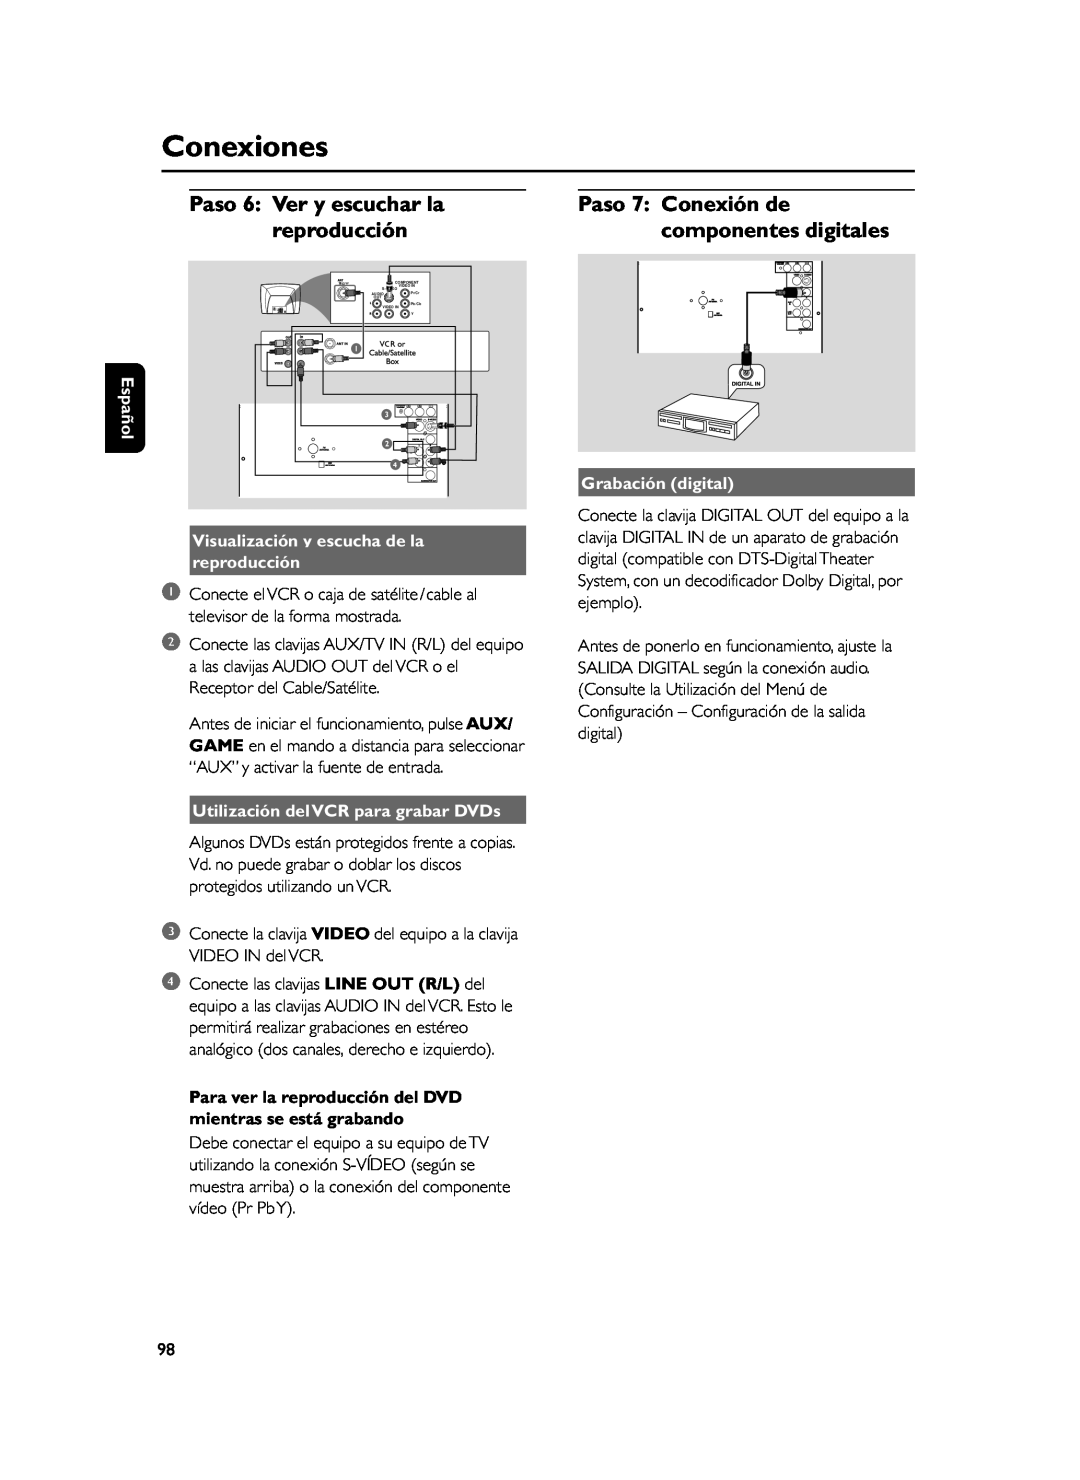 Philips FWD39 manual reproducción, Paso 7 Conexión de componentes digitales, Paso 6 Ver y escuchar la, Grabación digital 